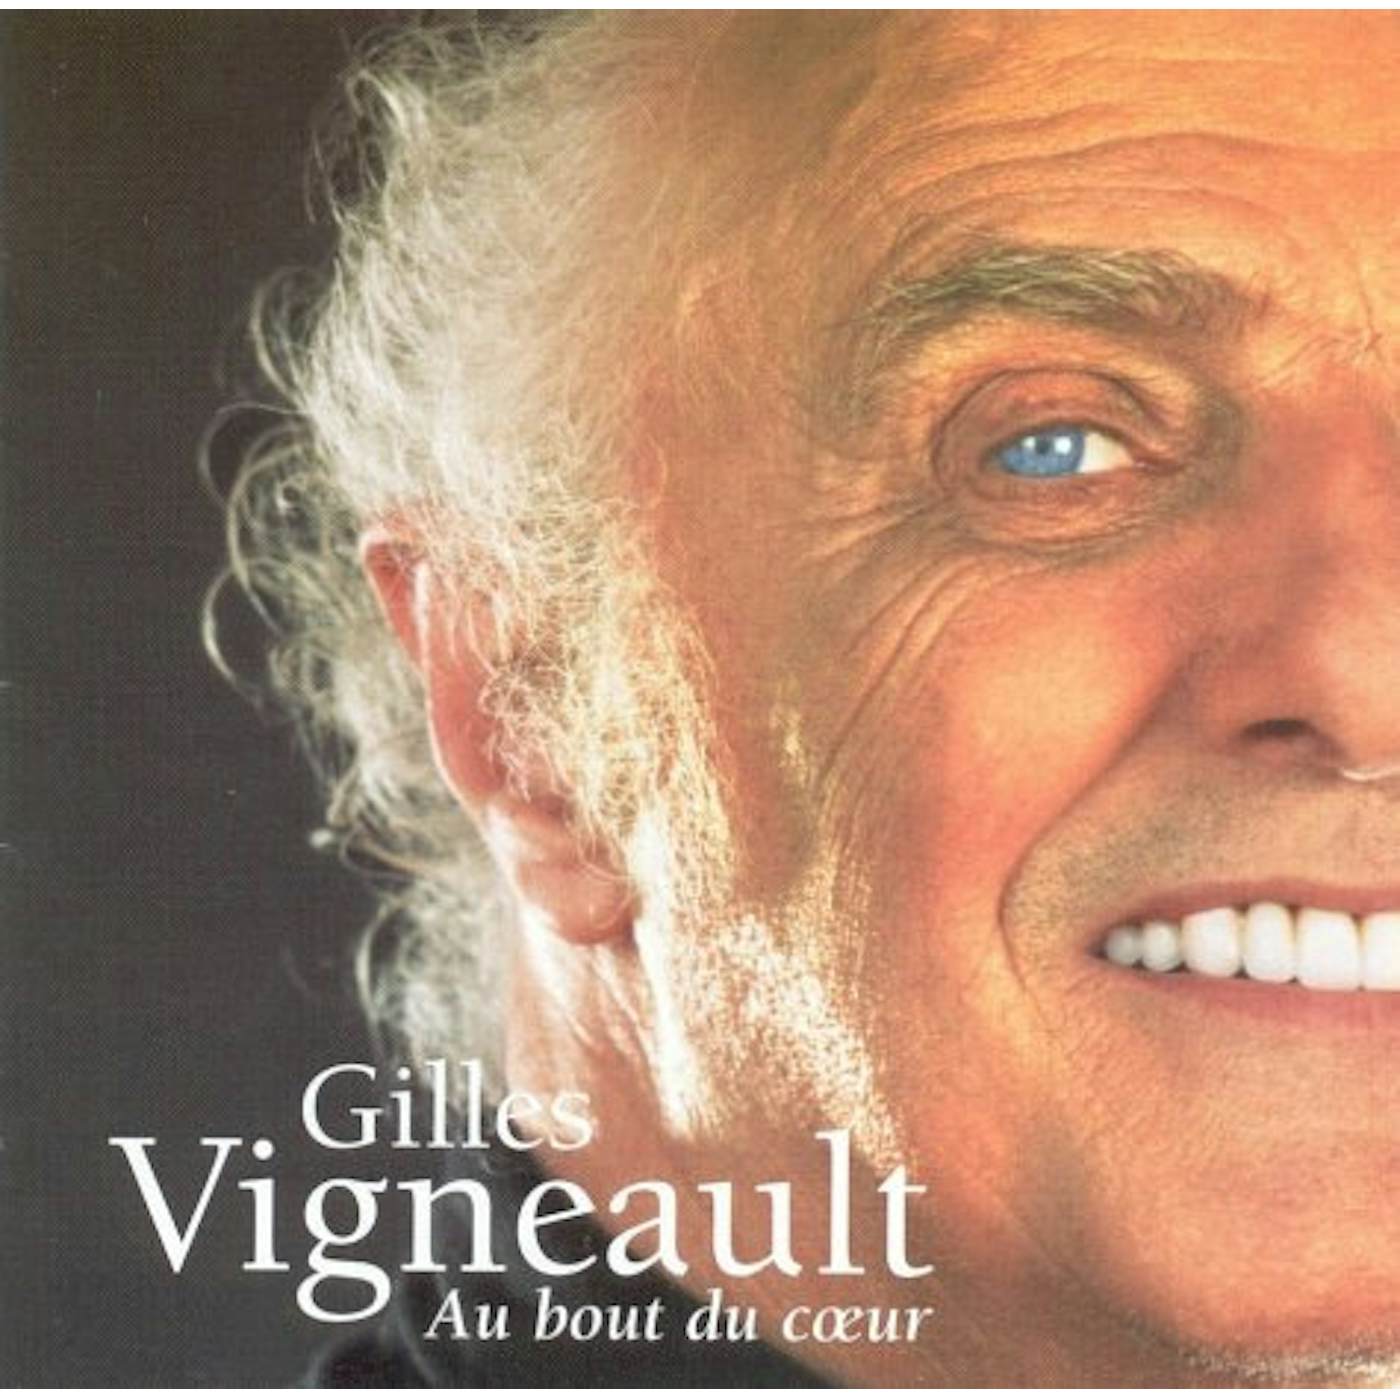 Gilles Vigneault AU BOUT DU COEUR CD